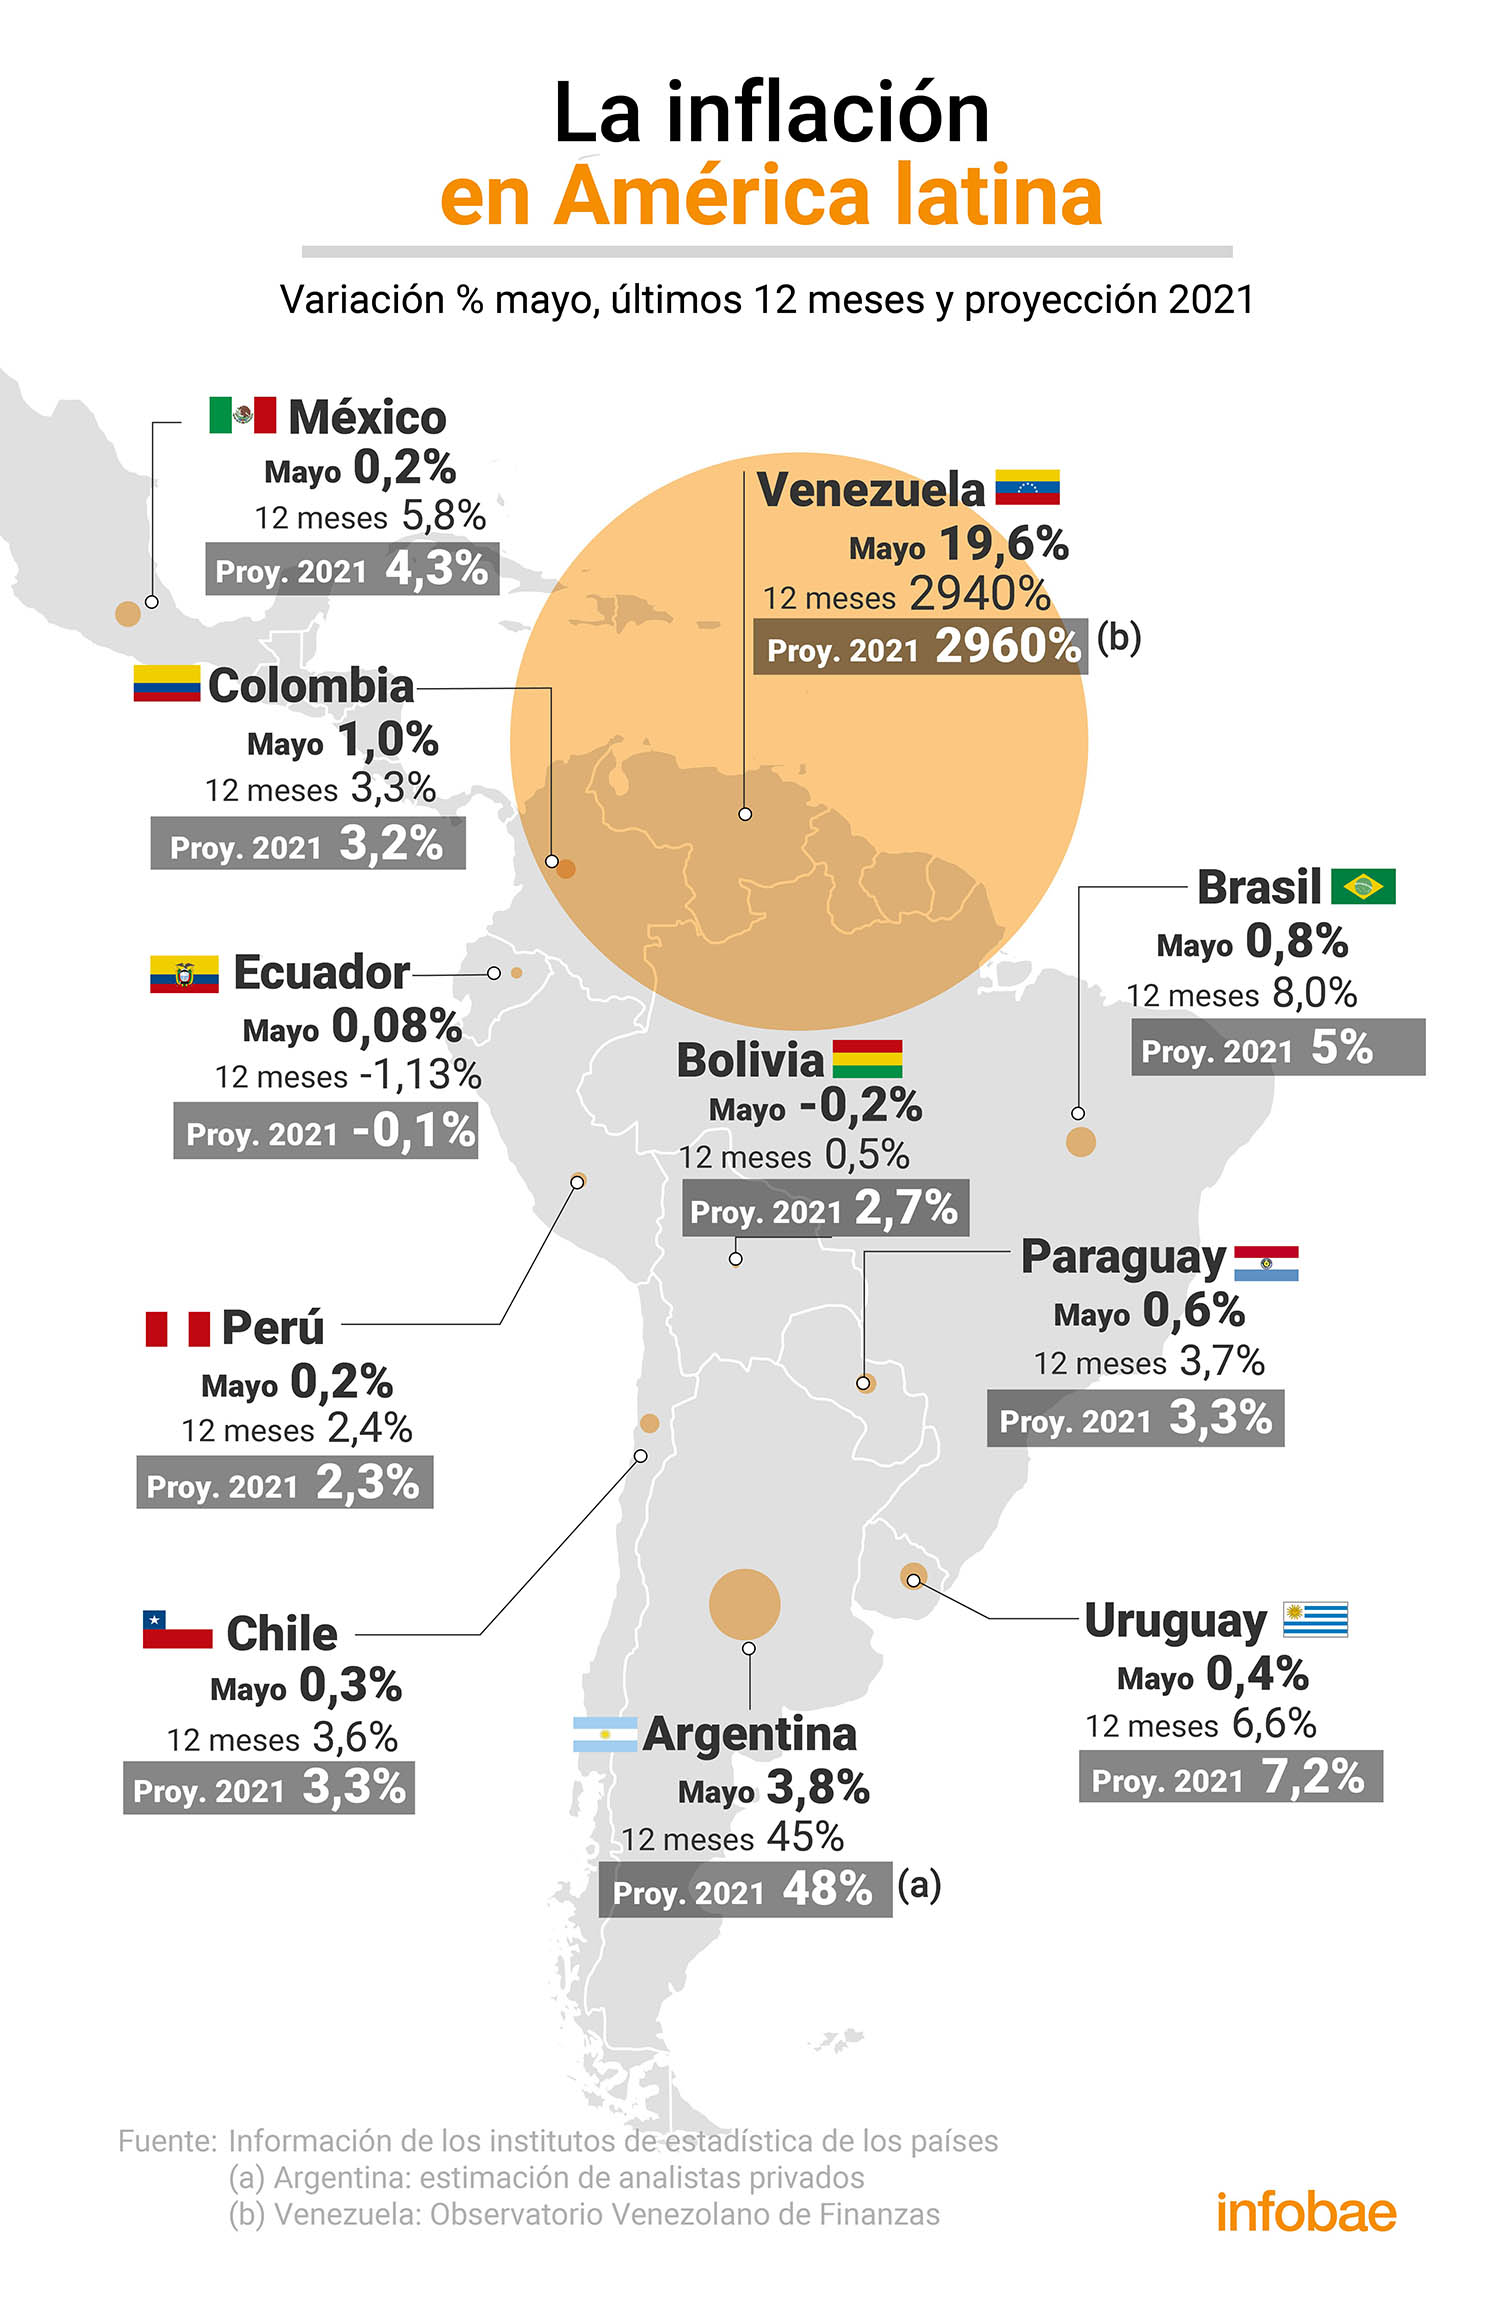 La inflación en América latina en mayo
Infografía de Marcelo Regalado
